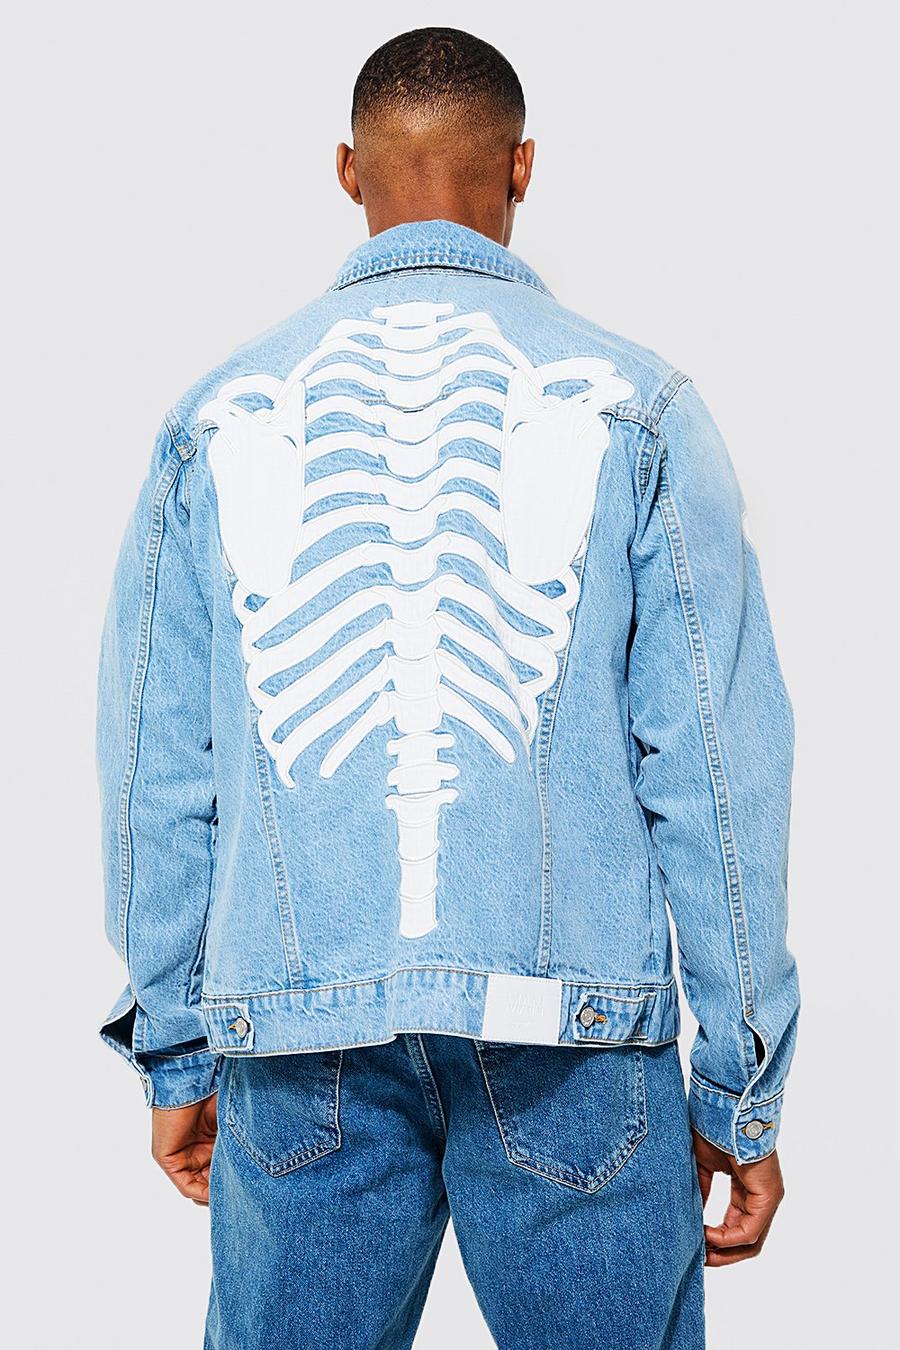 Jeansjacke mit Skelett-Applique, Light blue